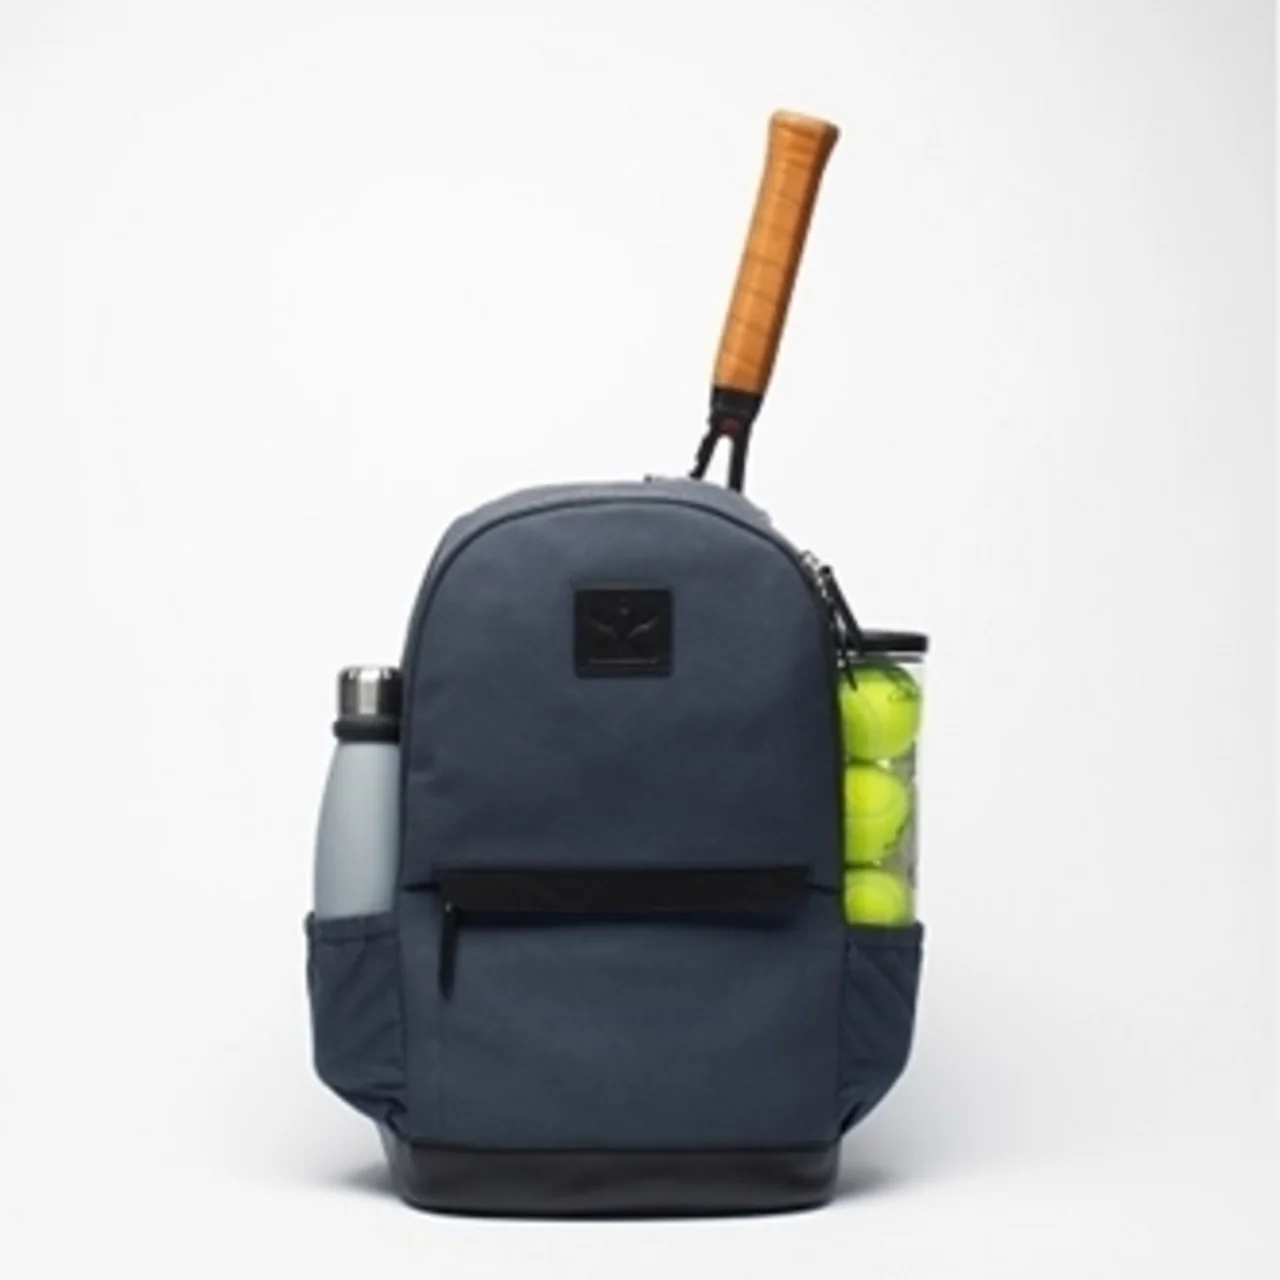 HILDEBRAND Backpack Blue